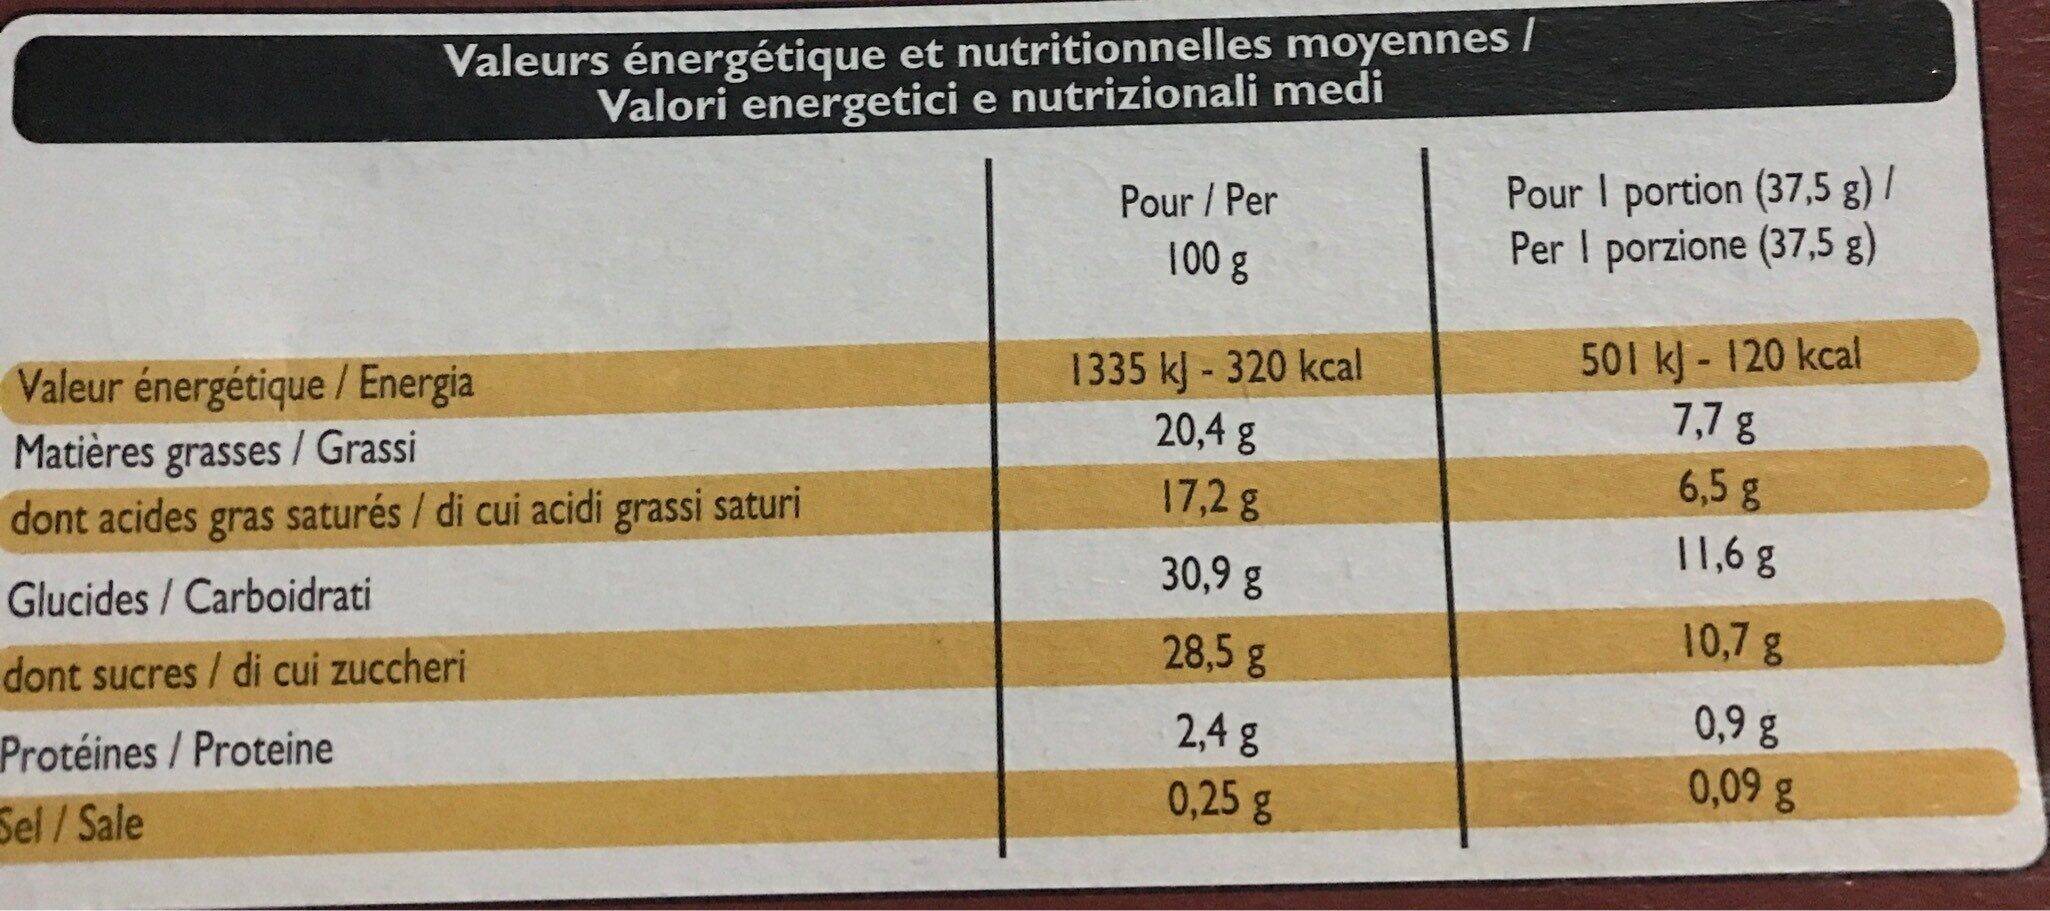 10 batonnets au chocolat - Nutrition facts - fr